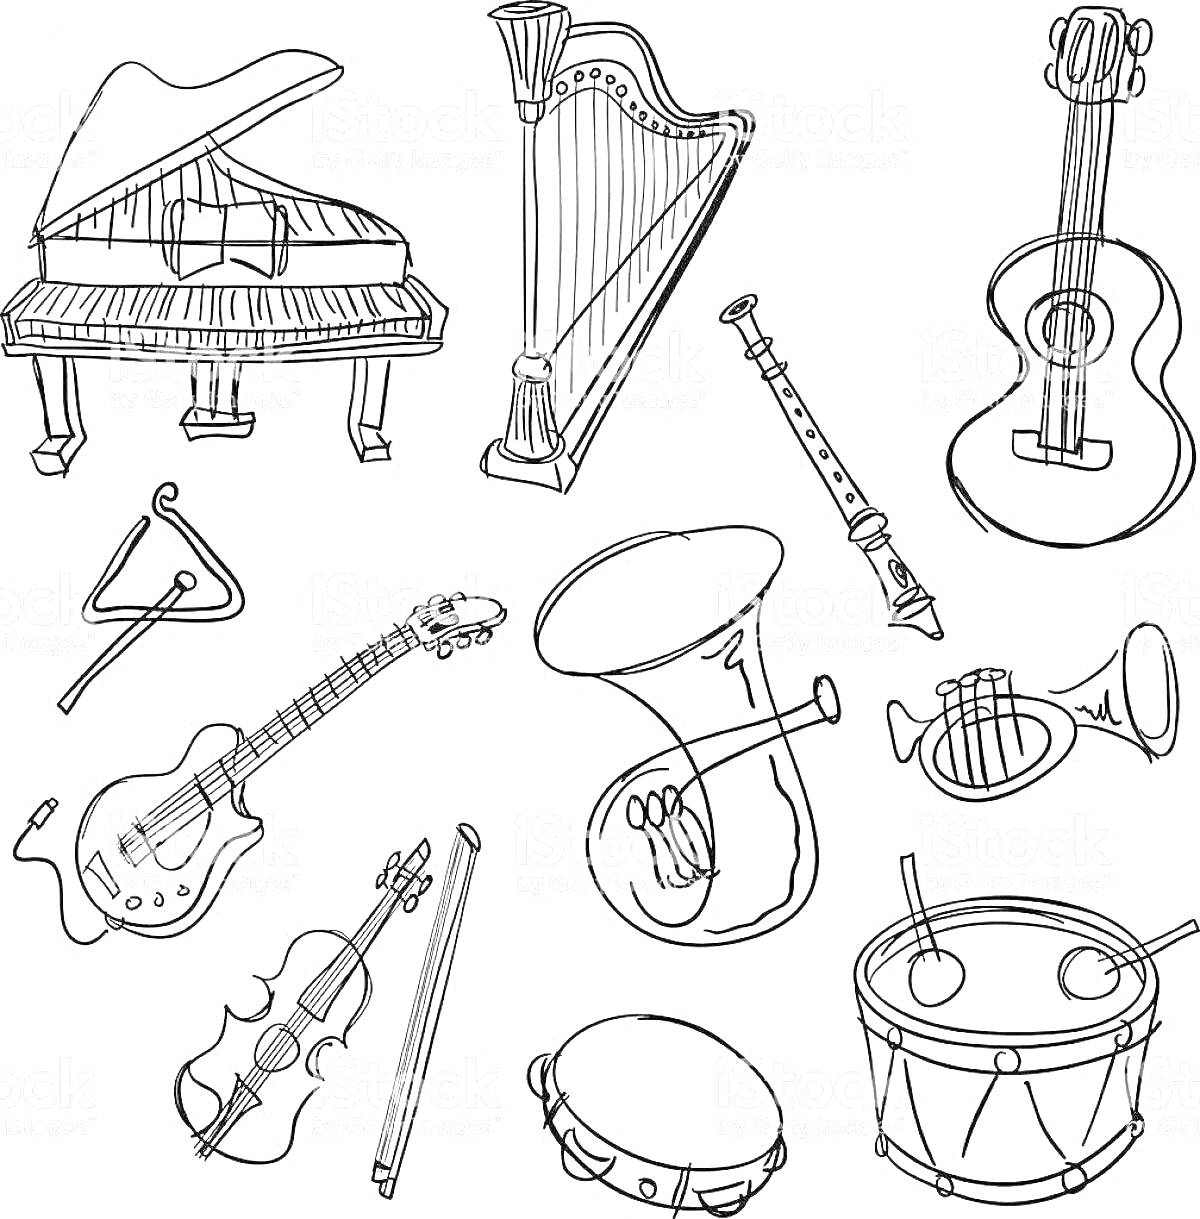 Раскраска пианино, арфа, гитара, треугольник, электрогитара, кларнет, валторна (фортепиано), труба, скрипка, контрабас, барабан с палочками